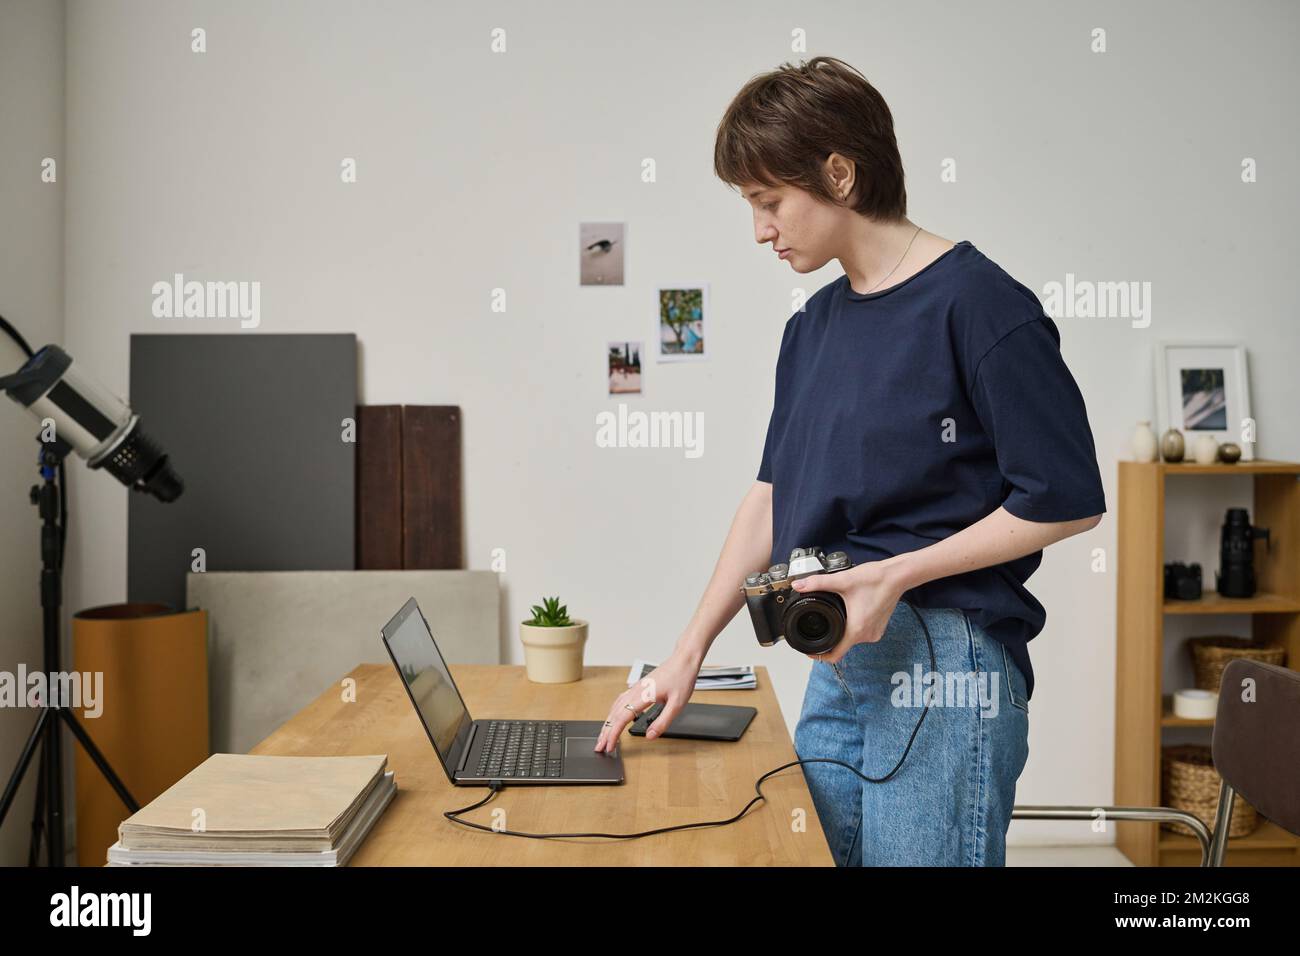 Jeune photographe connectant un appareil photo à un ordinateur portable pour regarder ses photos pendant son travail en studio Banque D'Images